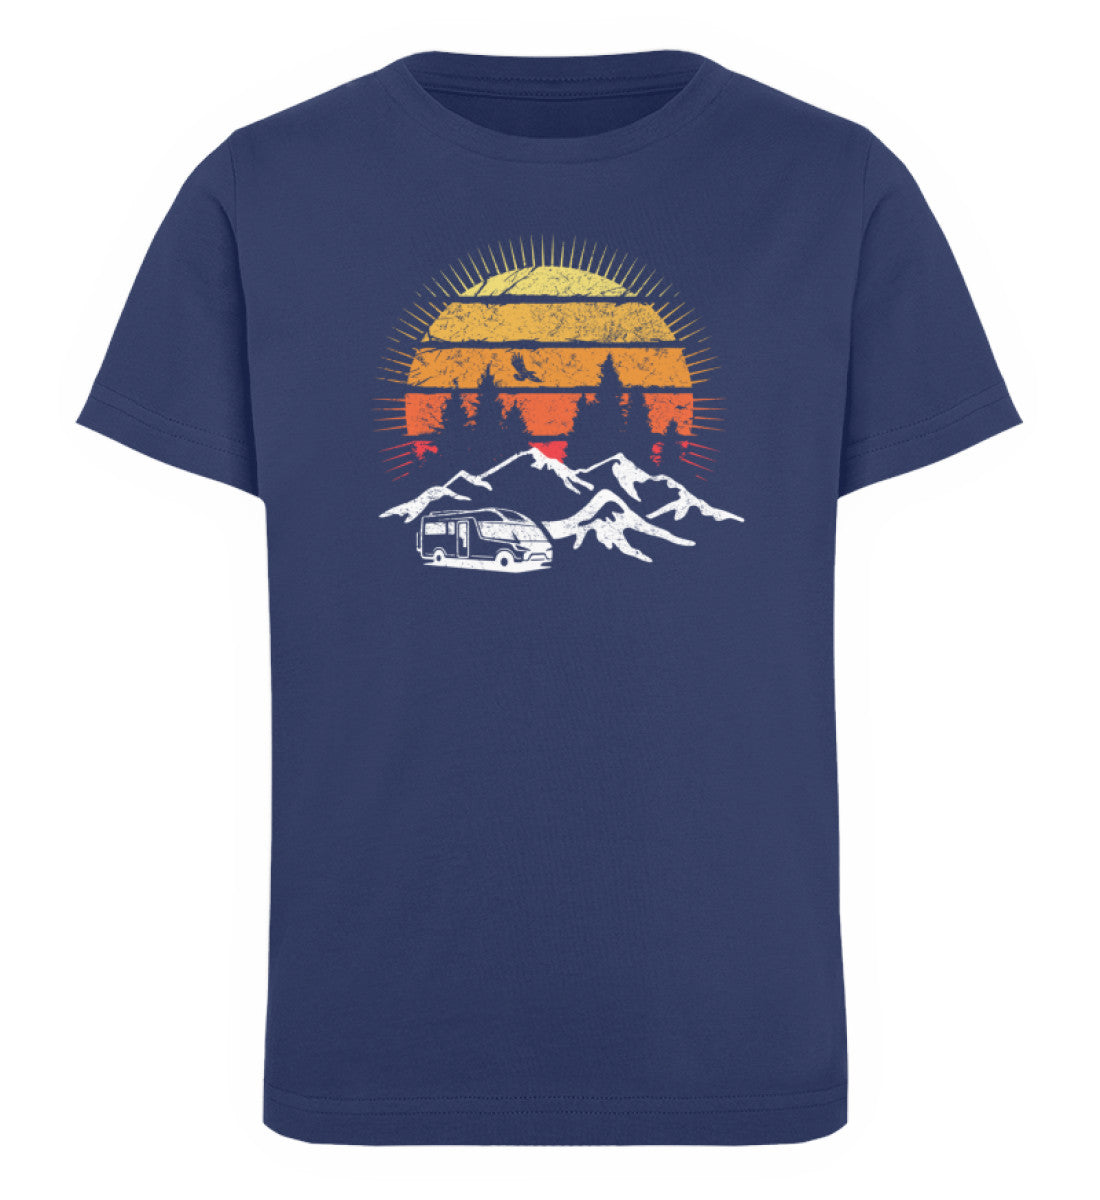 Wohnmobil Sonne Vintage - Kinder Premium Organic T-Shirt camping Navyblau